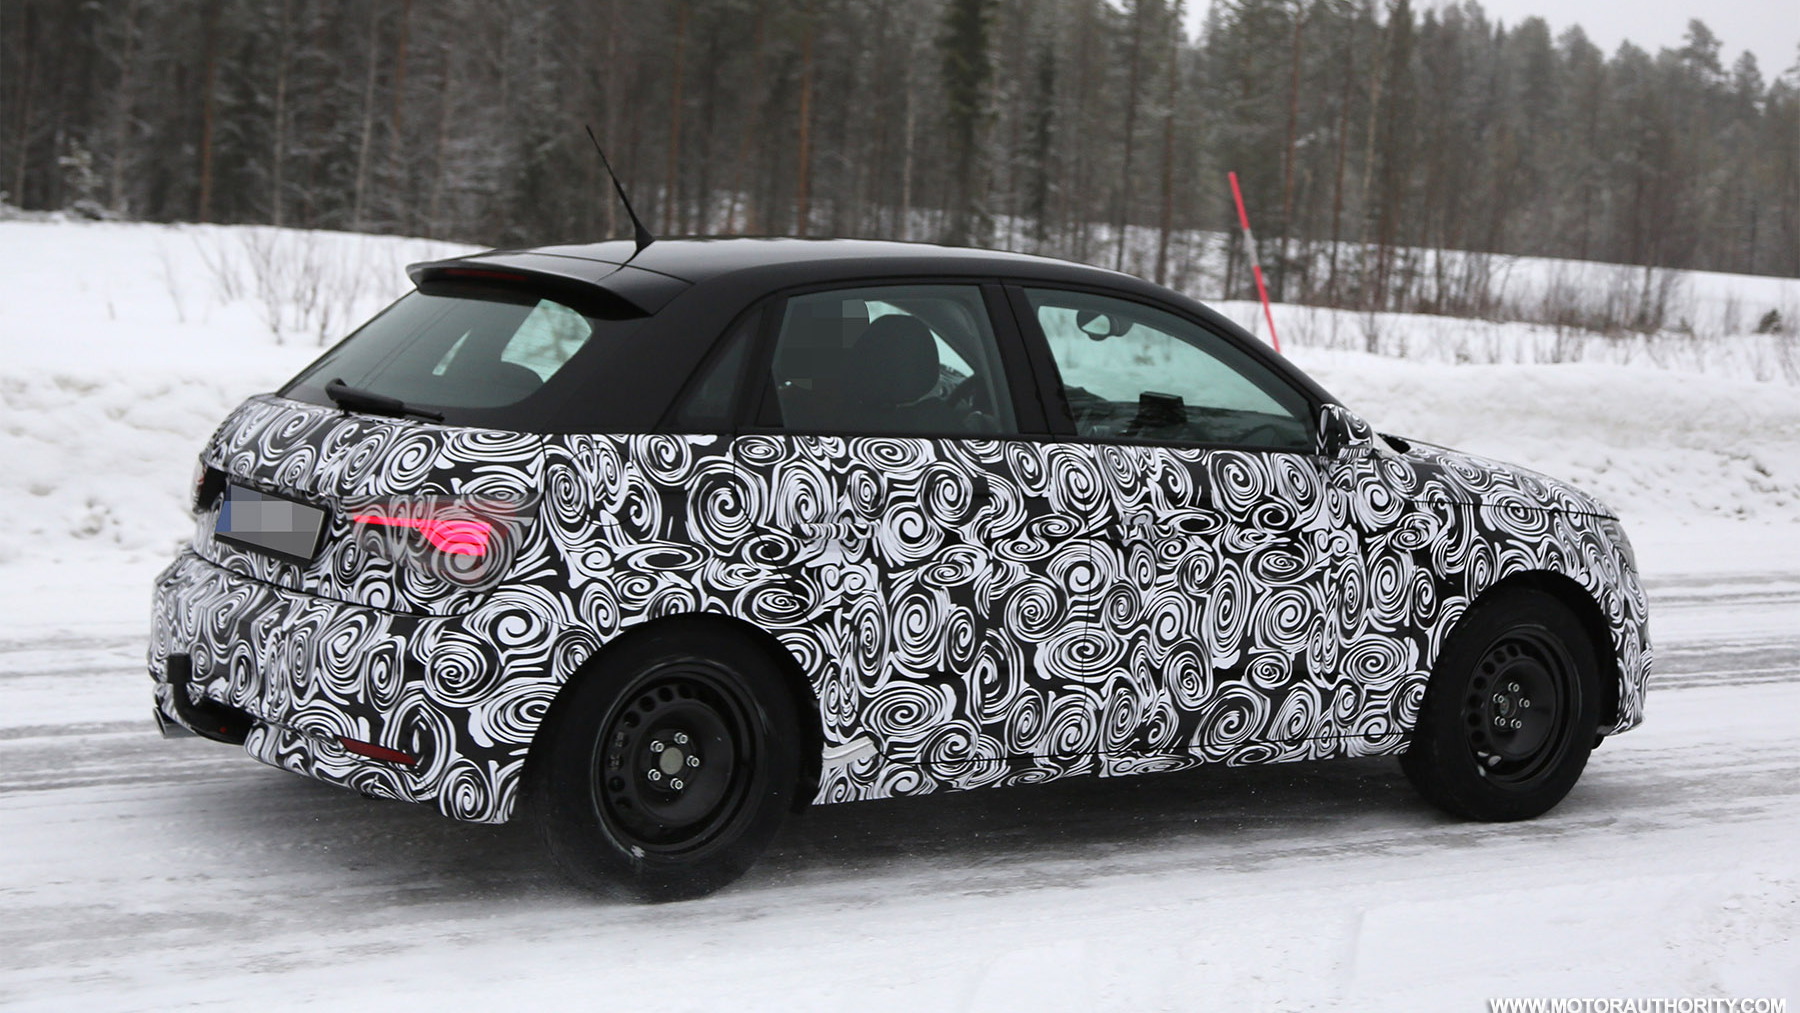 2014 Audi A1 Sportback facelift spy shots